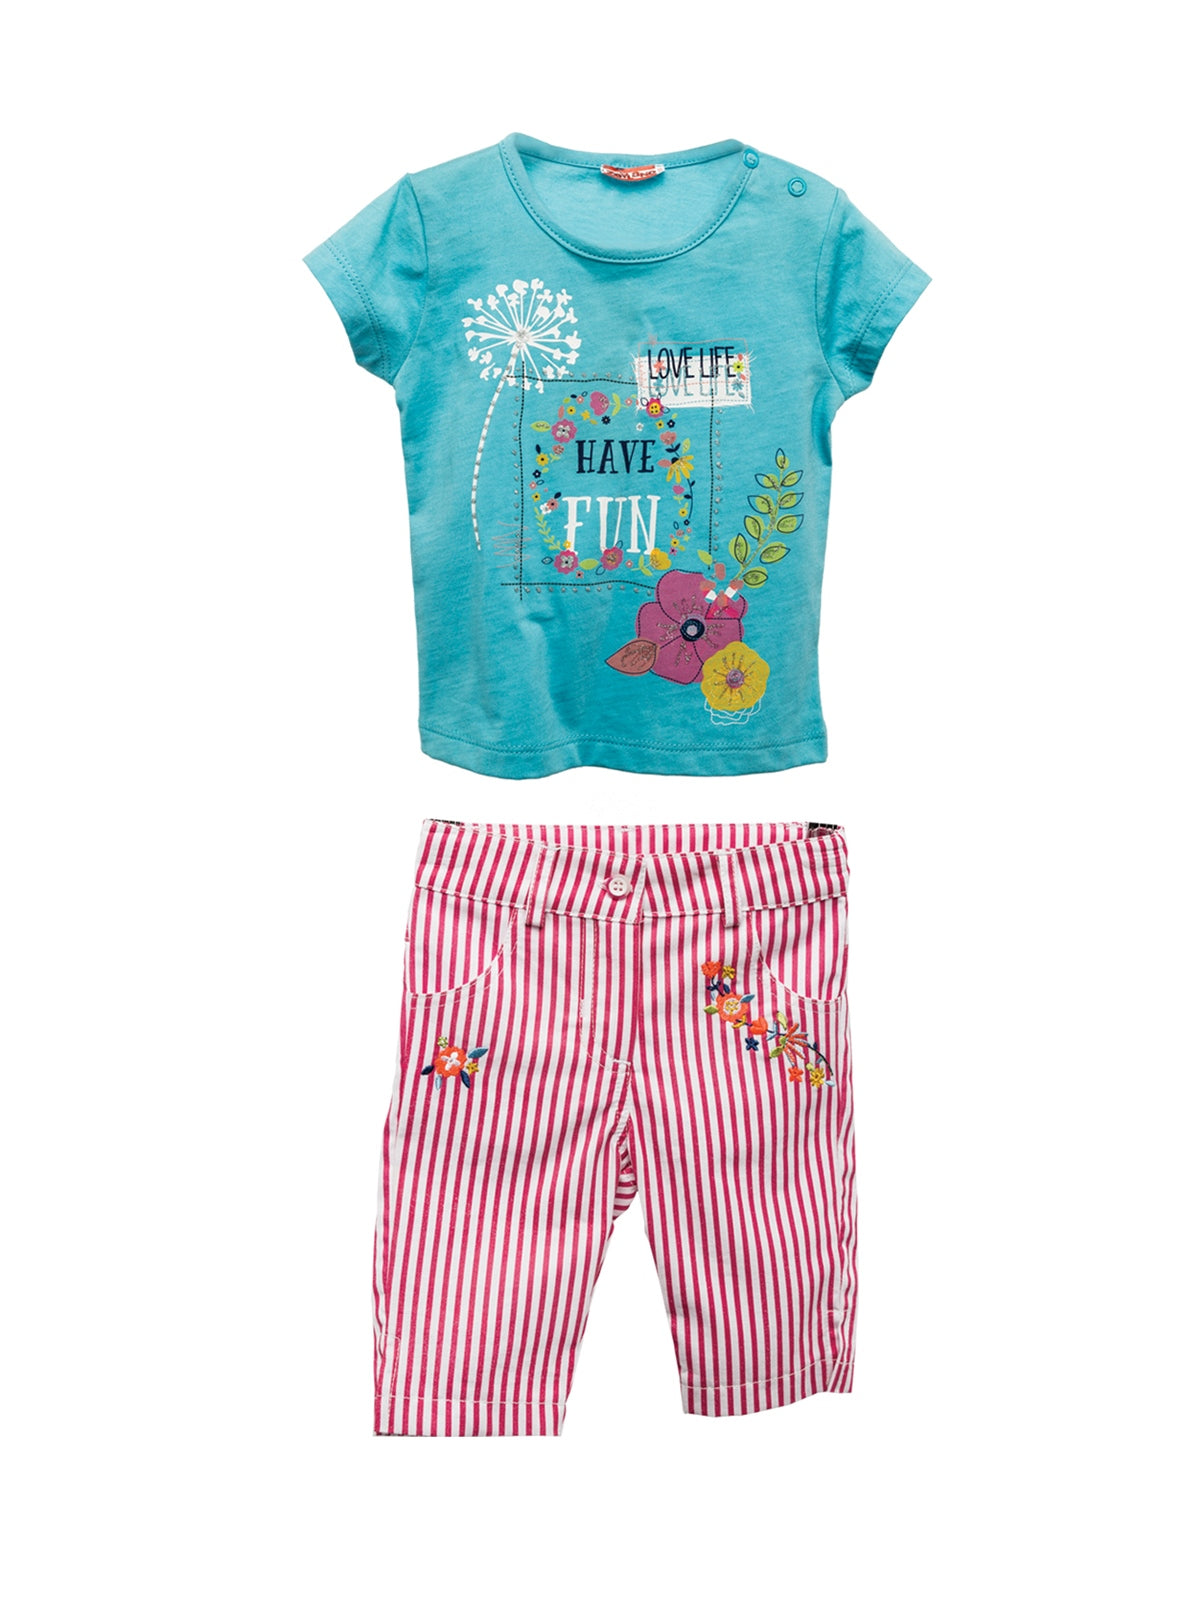 Kız Bebek Mavi Çizgili Nakışlı Pantolon ve T-Shirt Takım (6ay-4yaş)-0